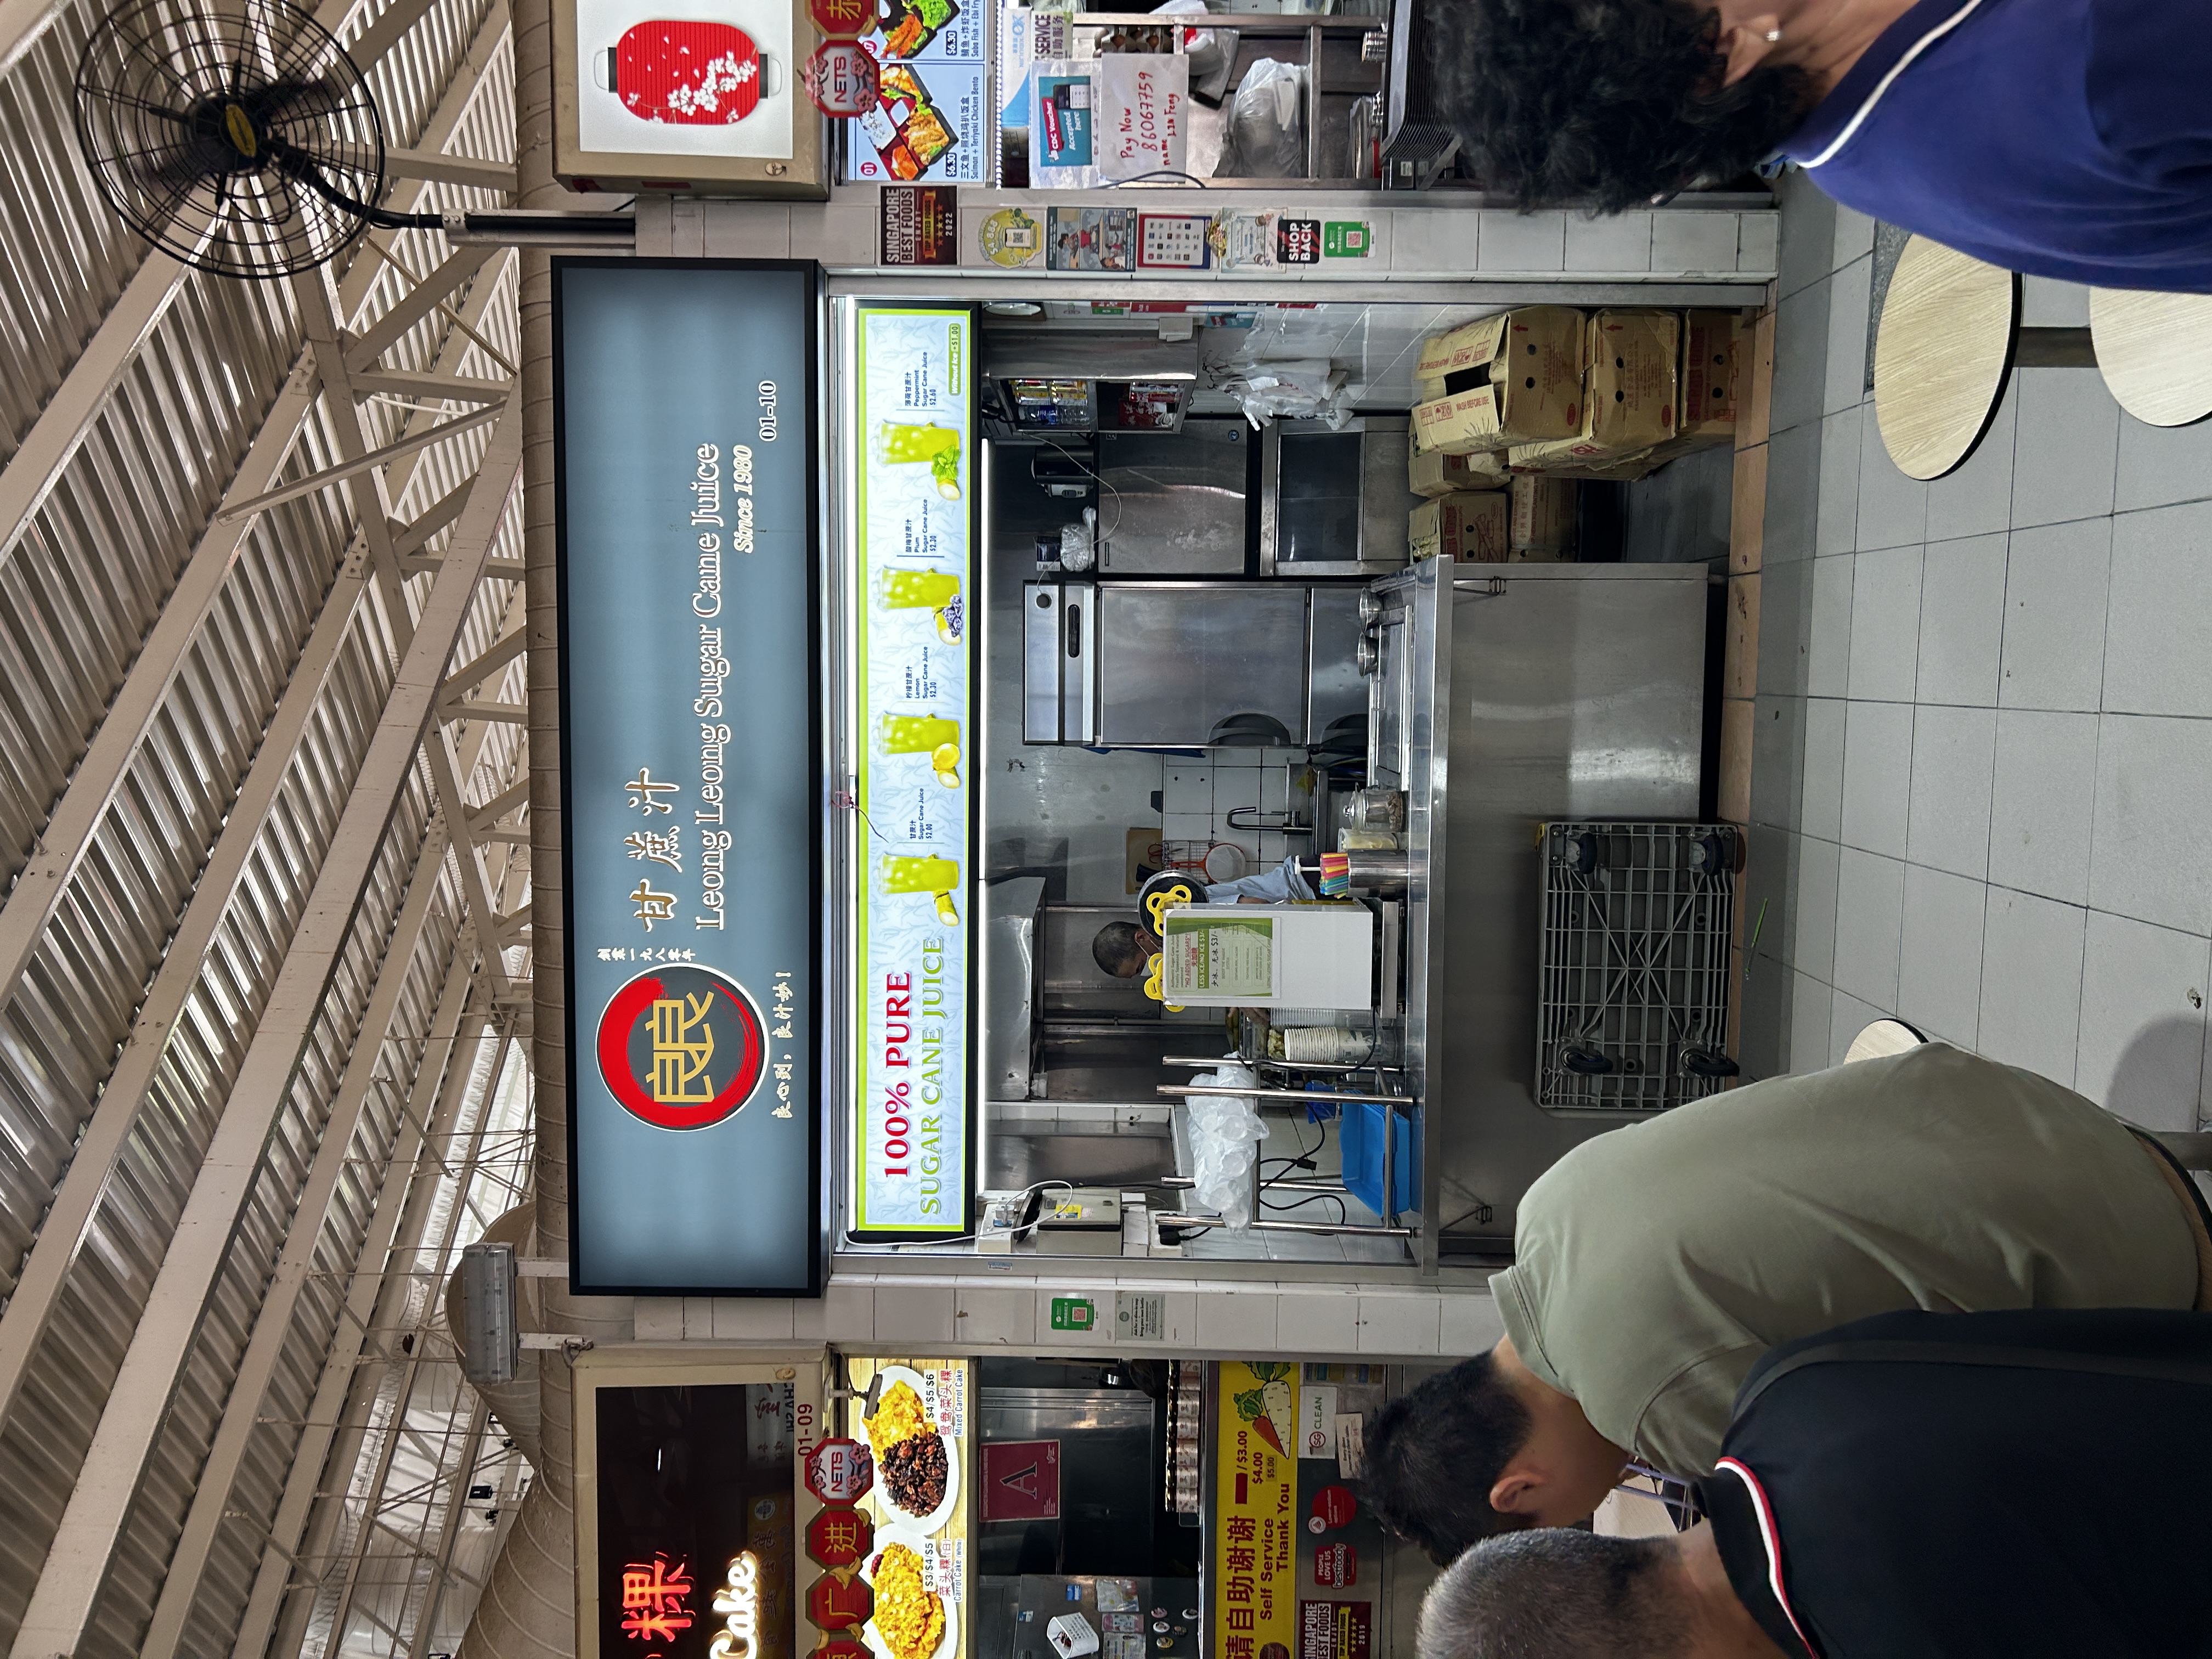 Teochew Fishball Minced Meat Noodle + Laksa Stall Near Segar Lrt Station